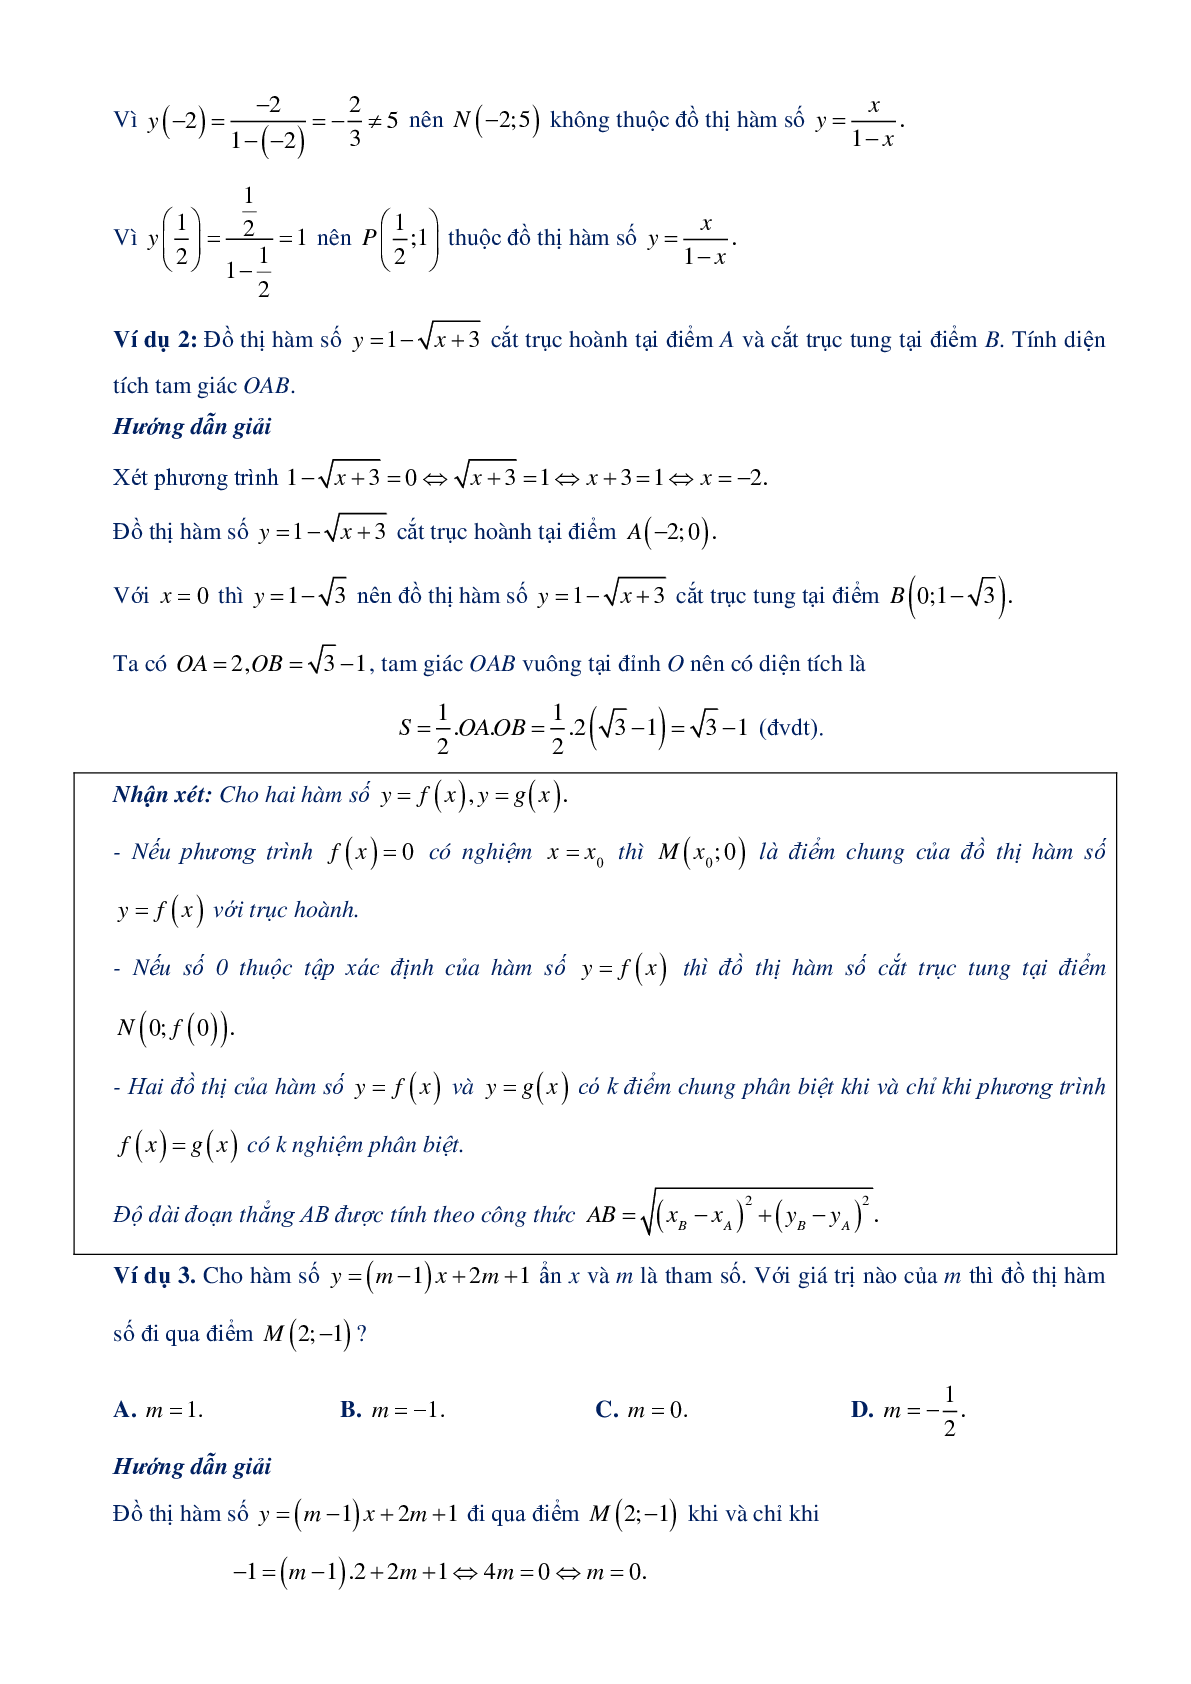 Chuyên đề hàm số bậc nhất và hàm số bậc 2 - Đại số 10 (trang 8)